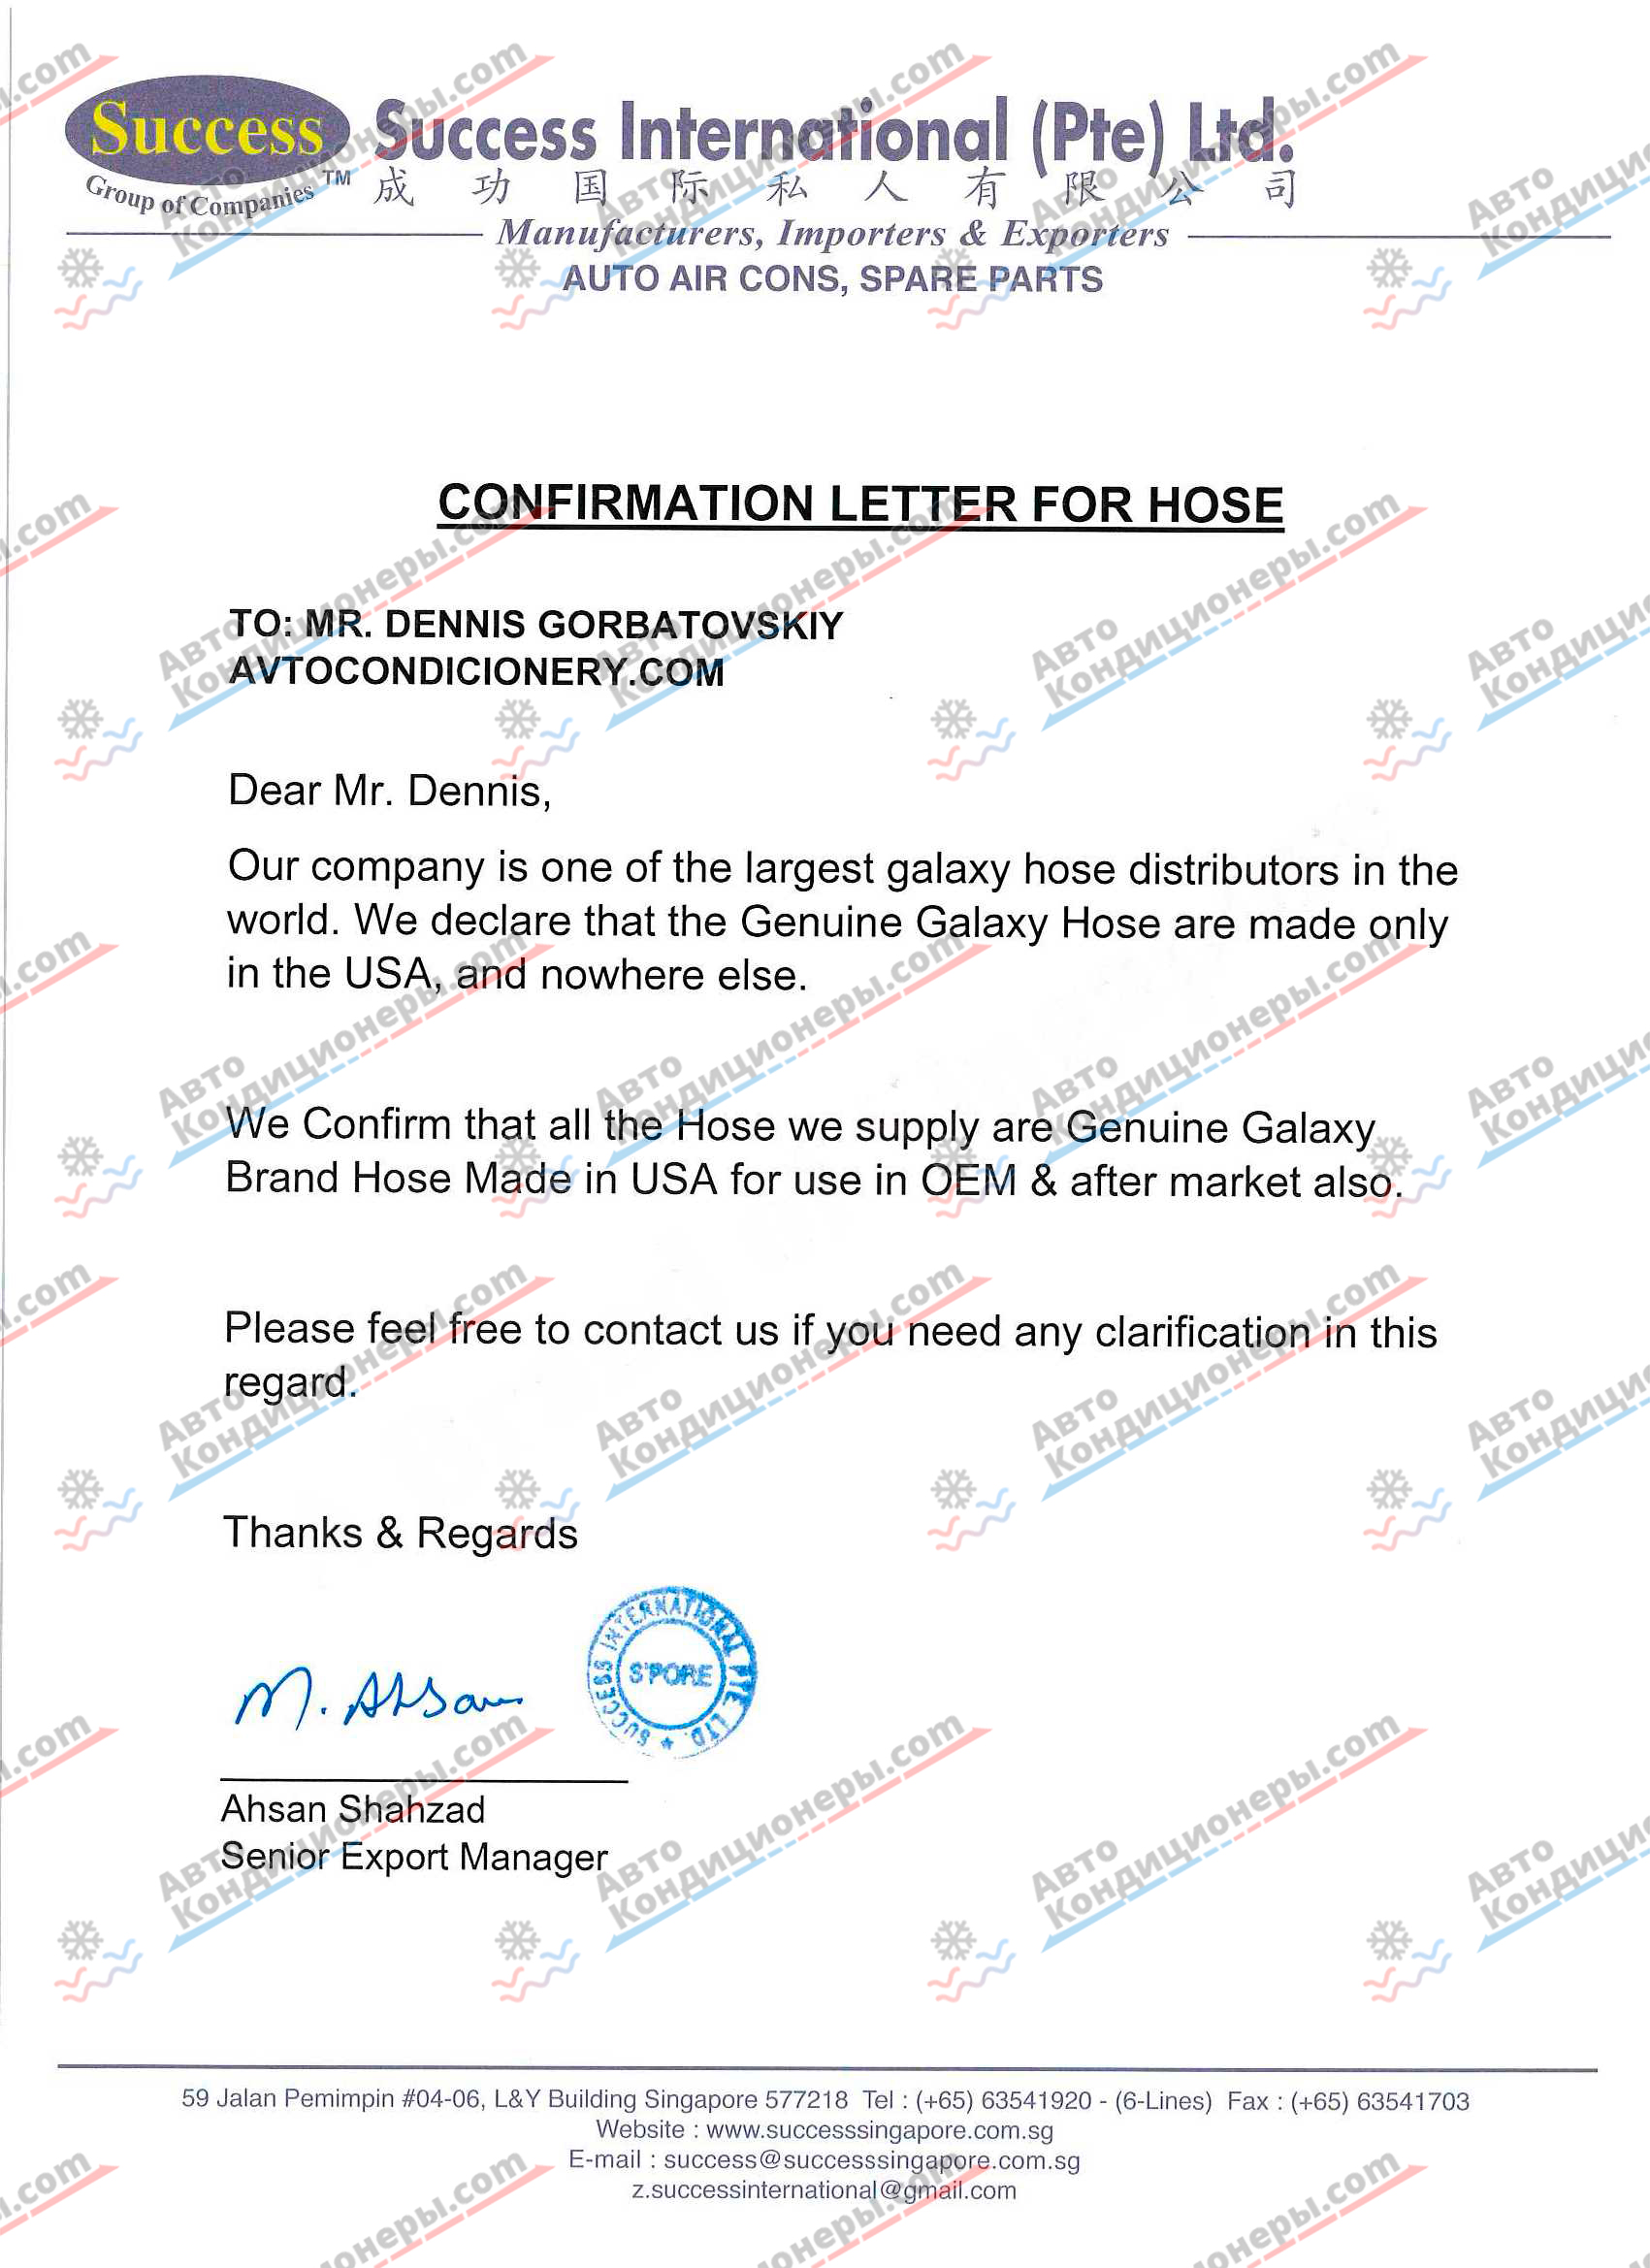 SUCCESS International (Pte) Ltd. - Confirmation letter for hose